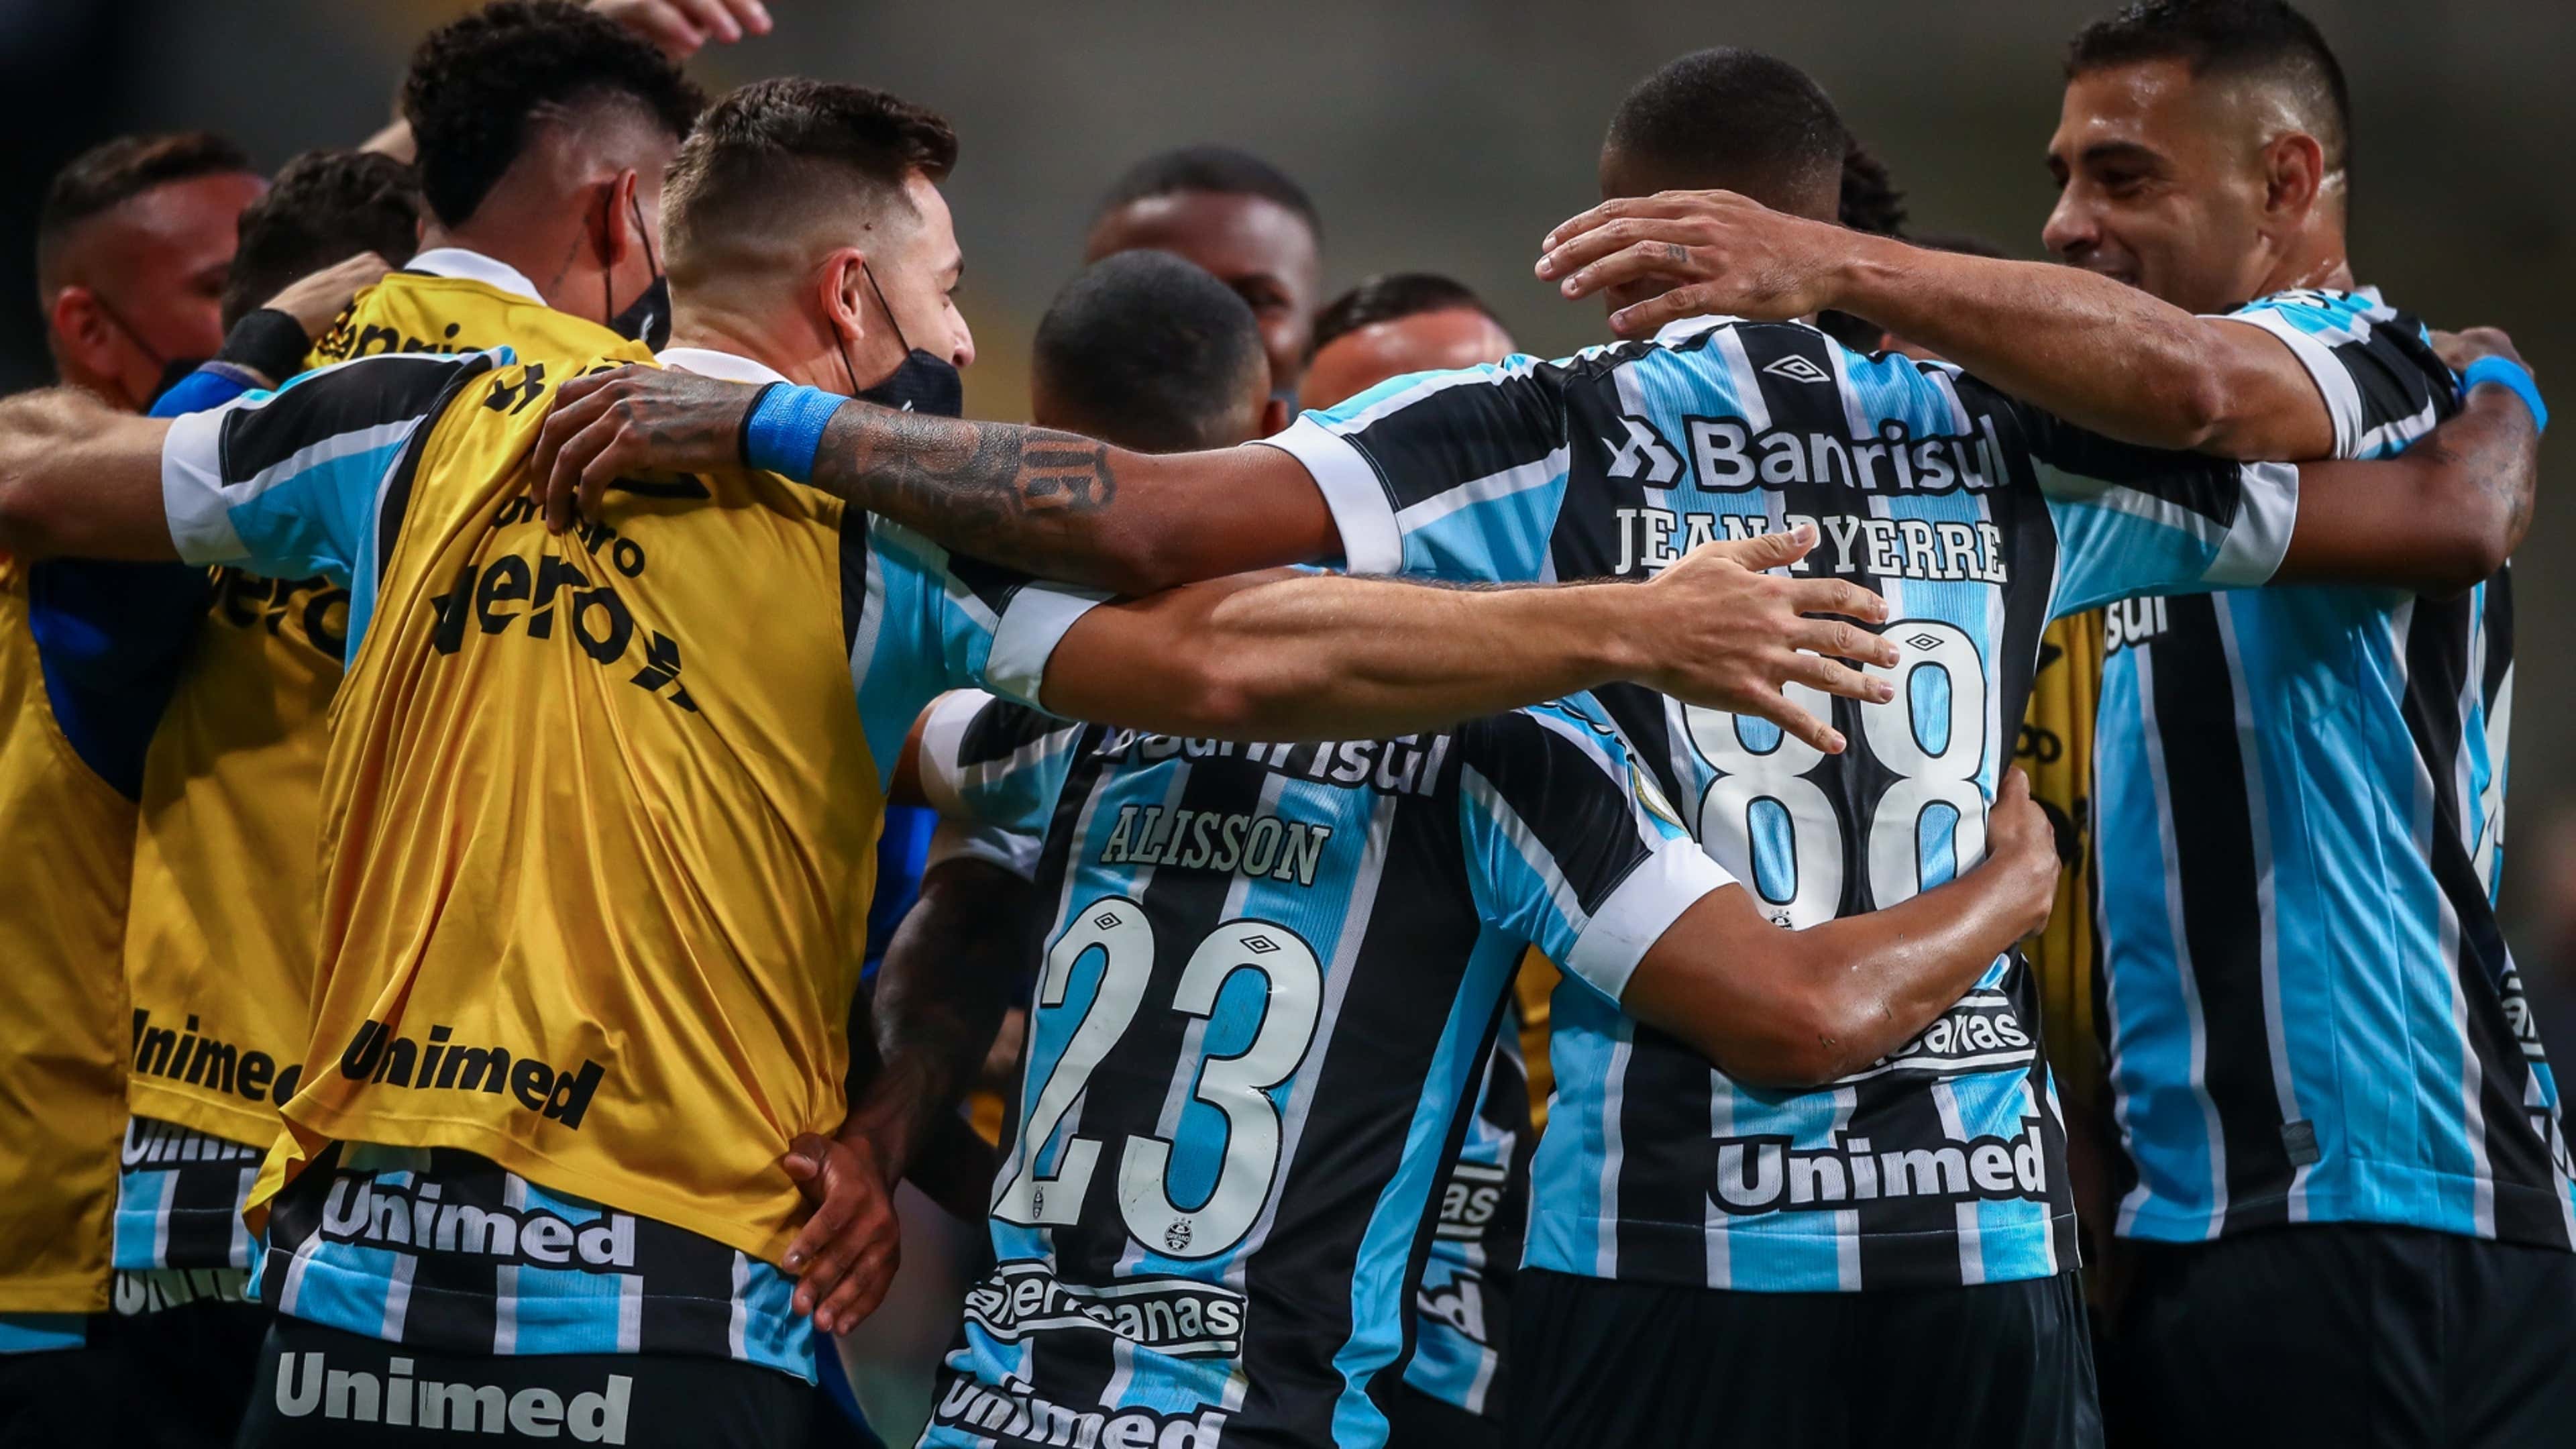 Grêmio x Palmeiras ao vivo: como assistir online e transmissão na